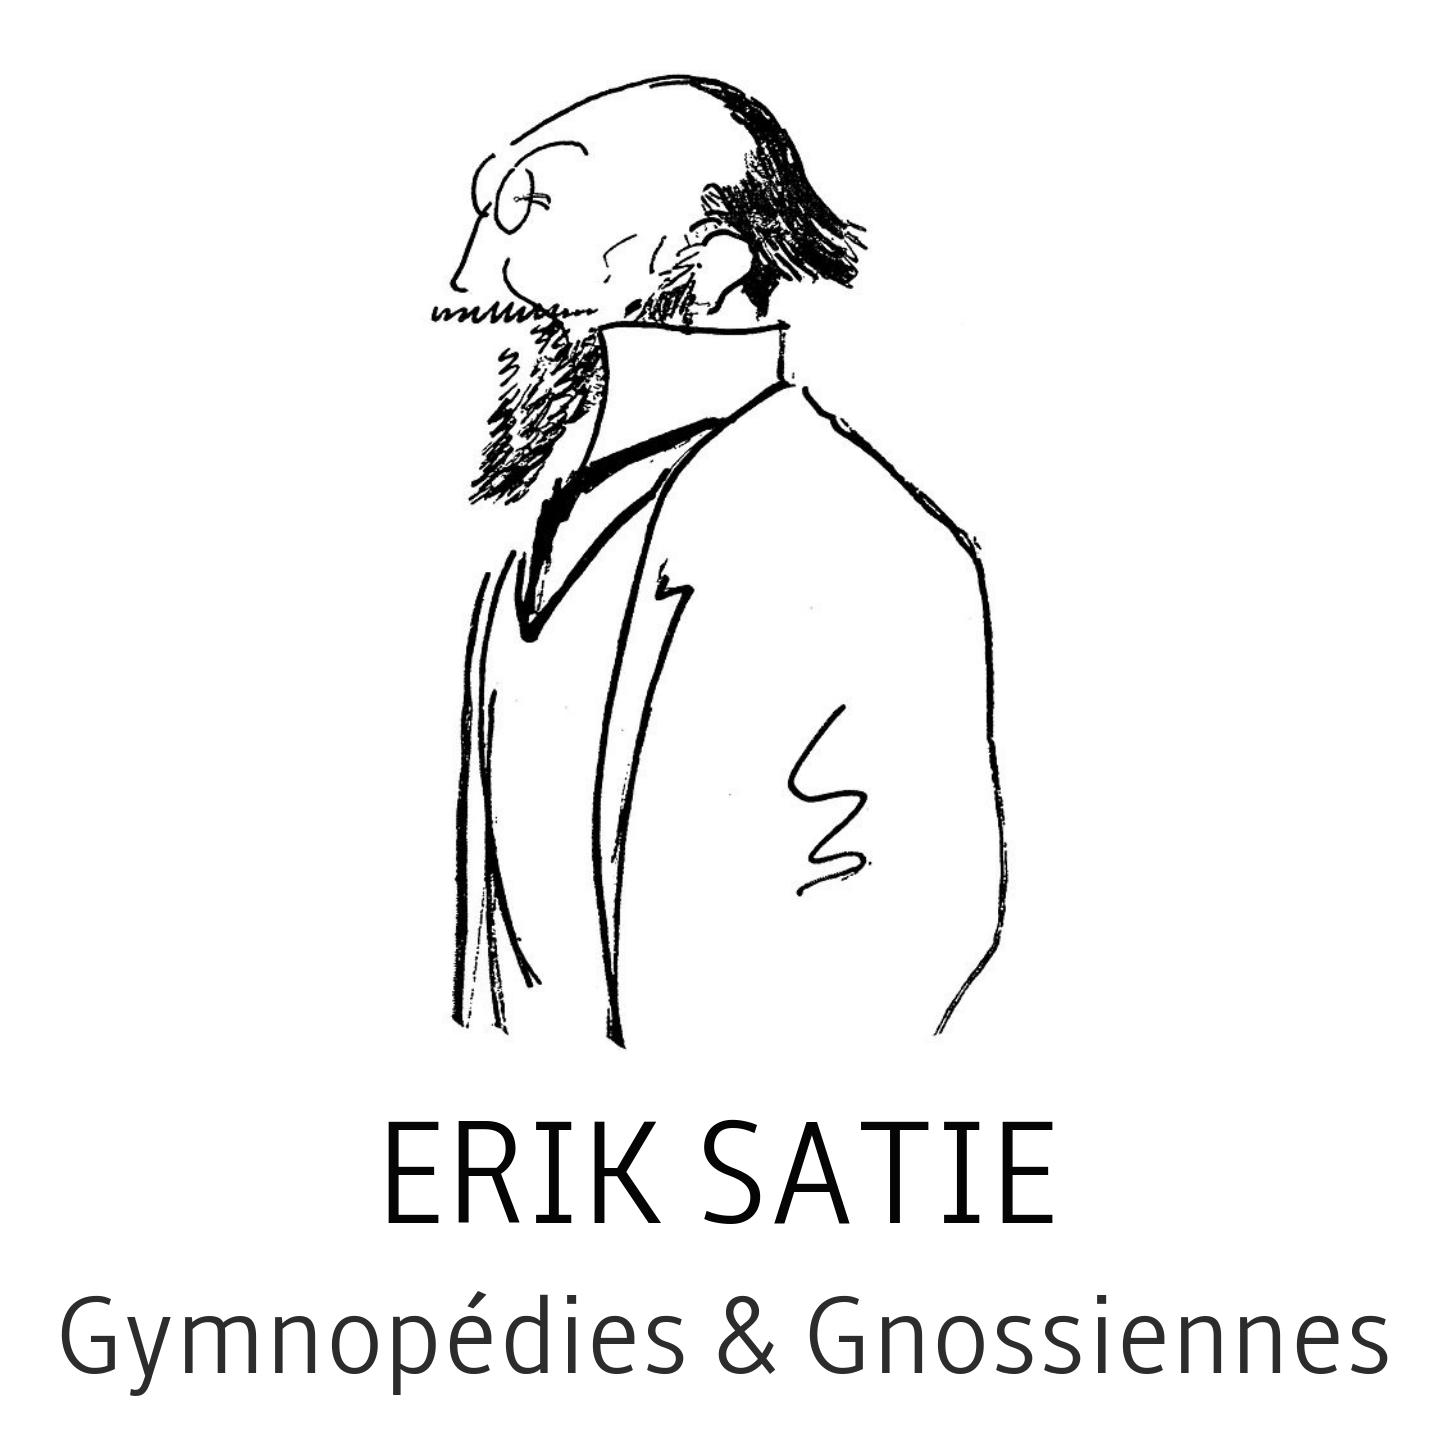 Erik satie : gymnope dies  gnossiennes